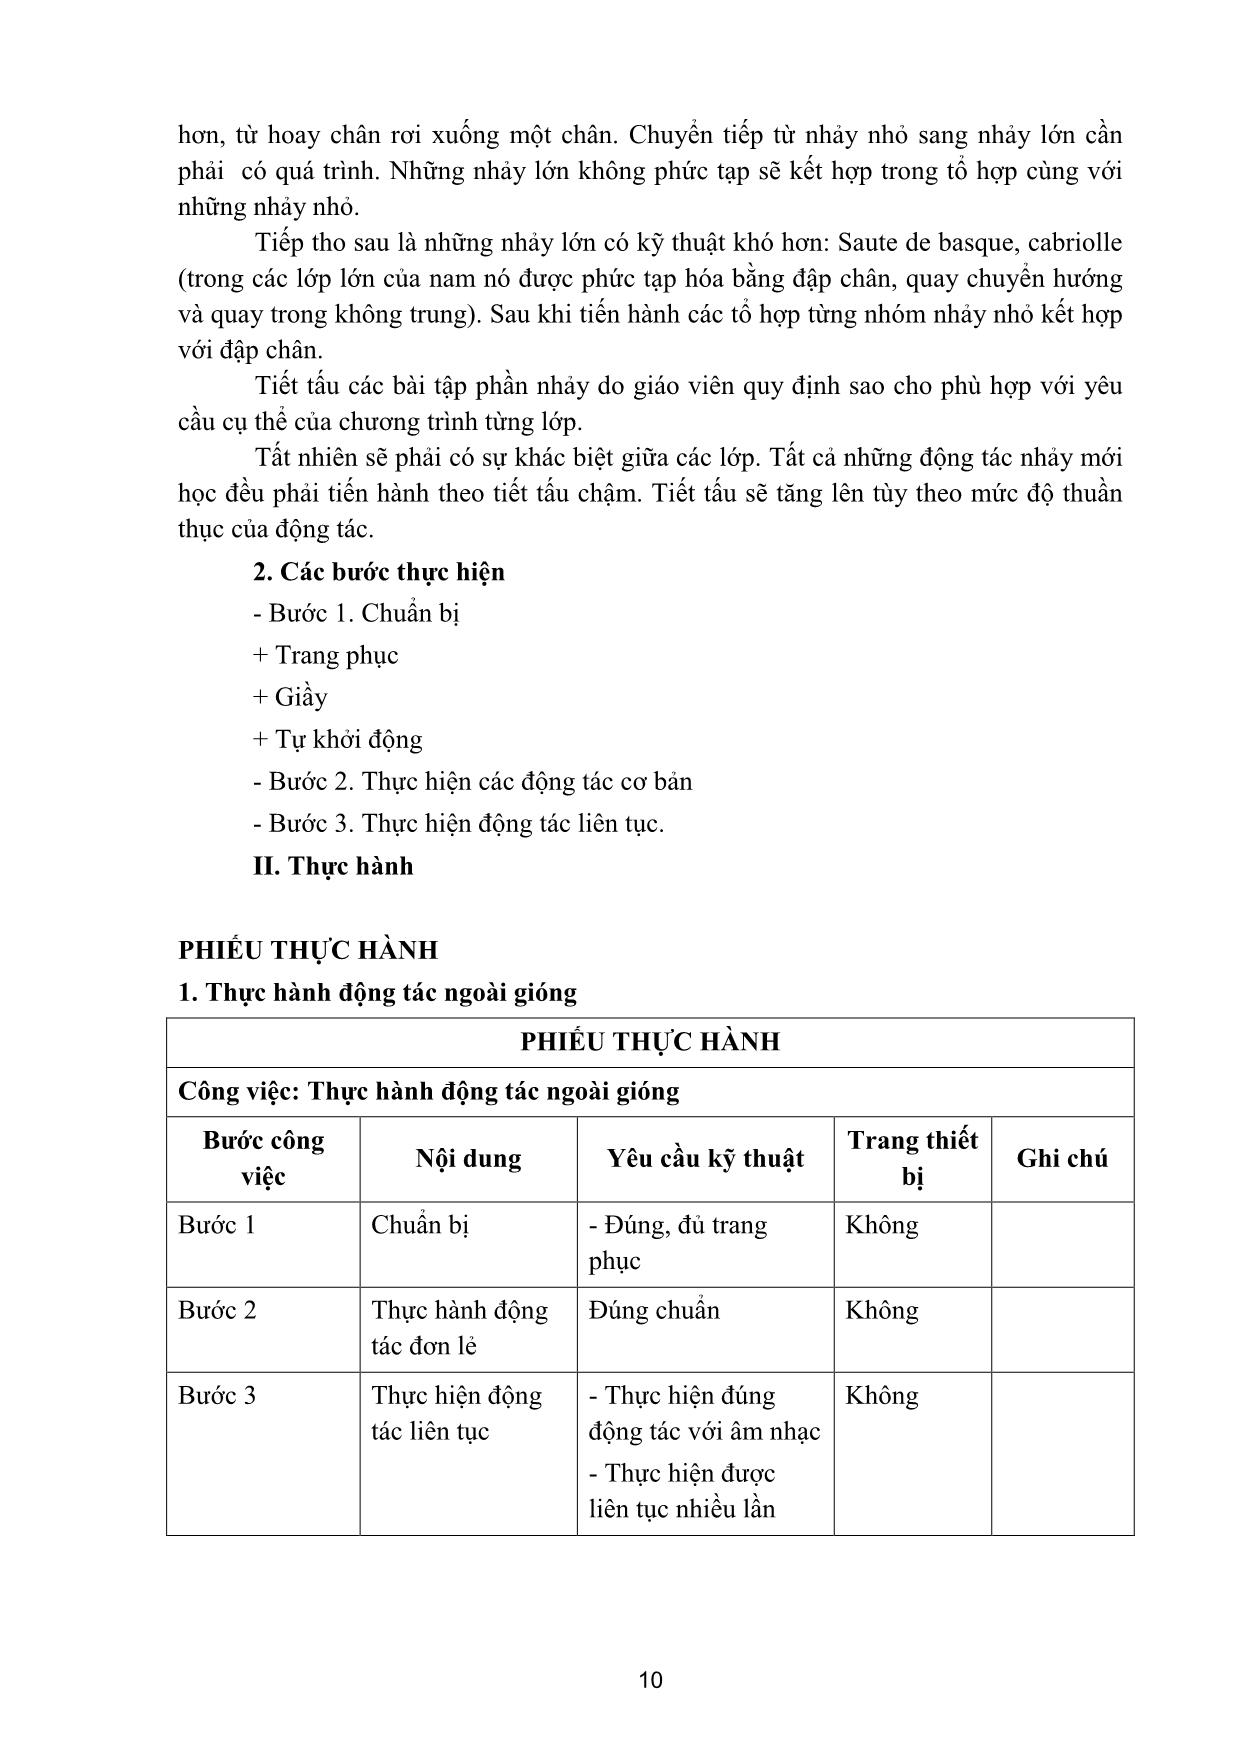 Giáo trình Múa tính cách trang 9